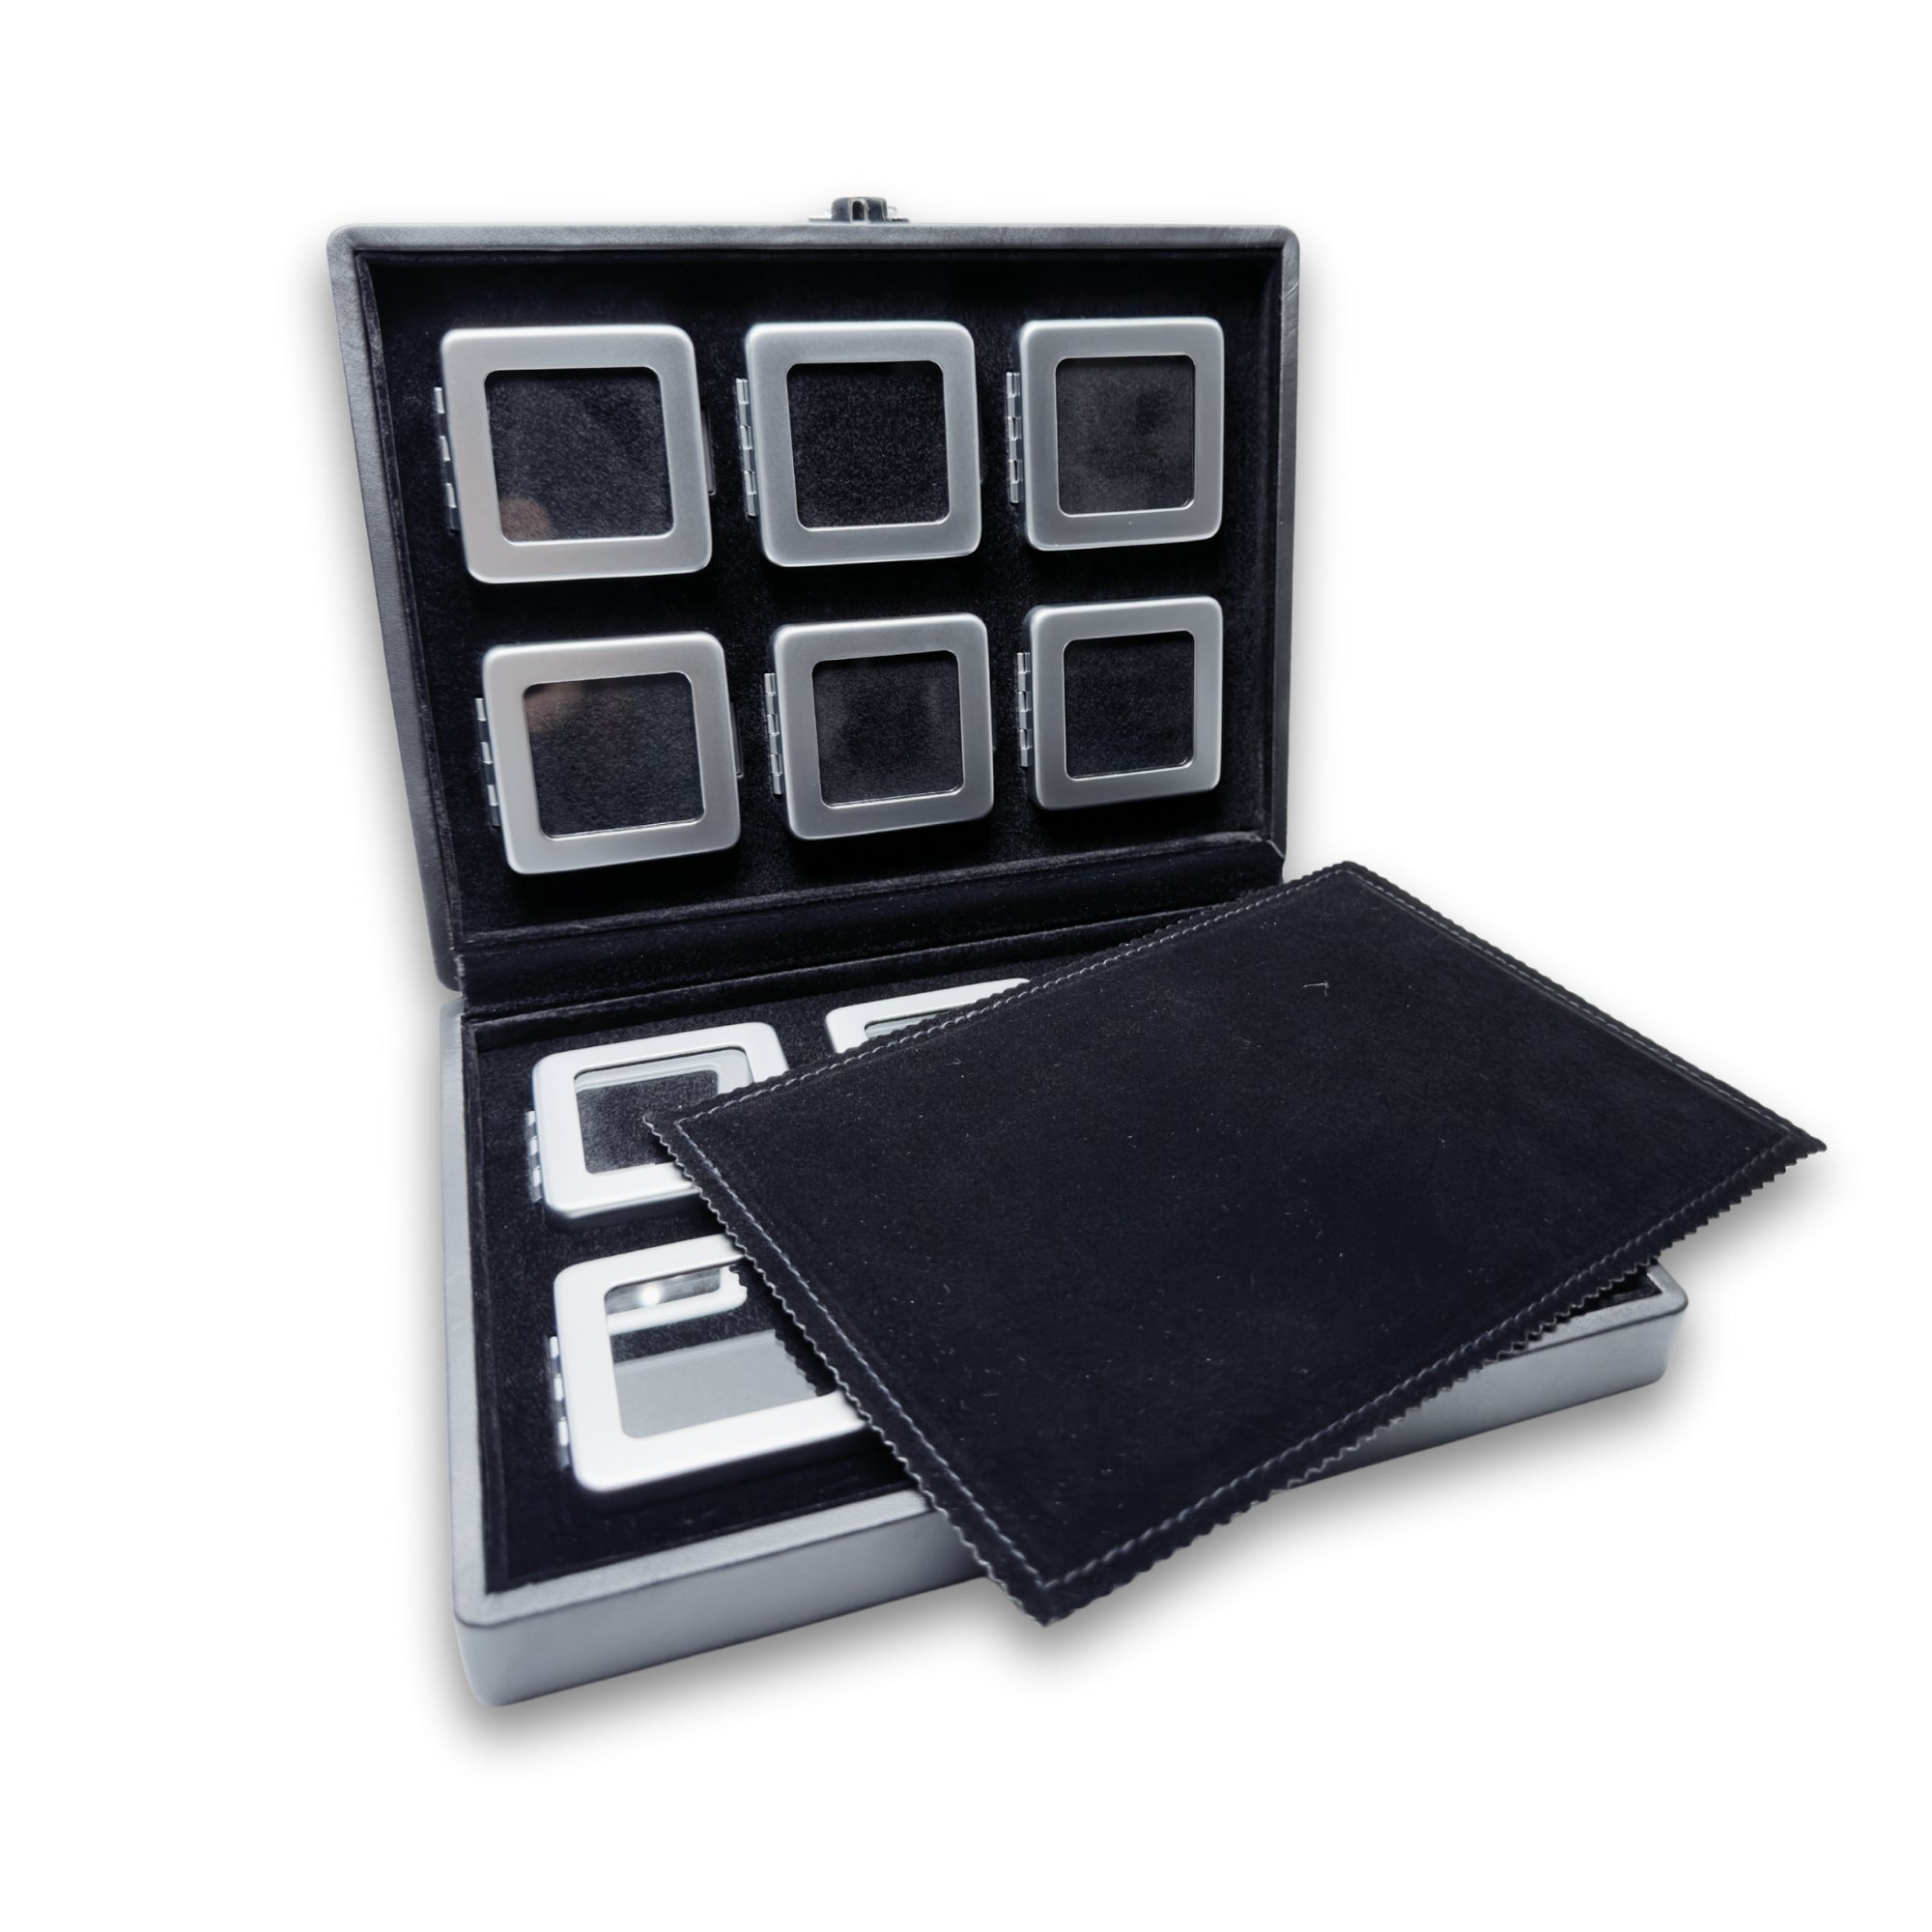 Πολυτελές σετ 12 κουτιών για πολύτιμους λίθους σε κομψή θήκη παρουσίασης